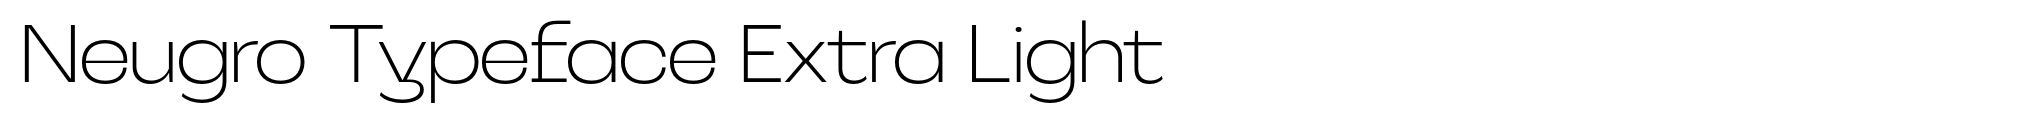 Neugro Typeface Extra Light image